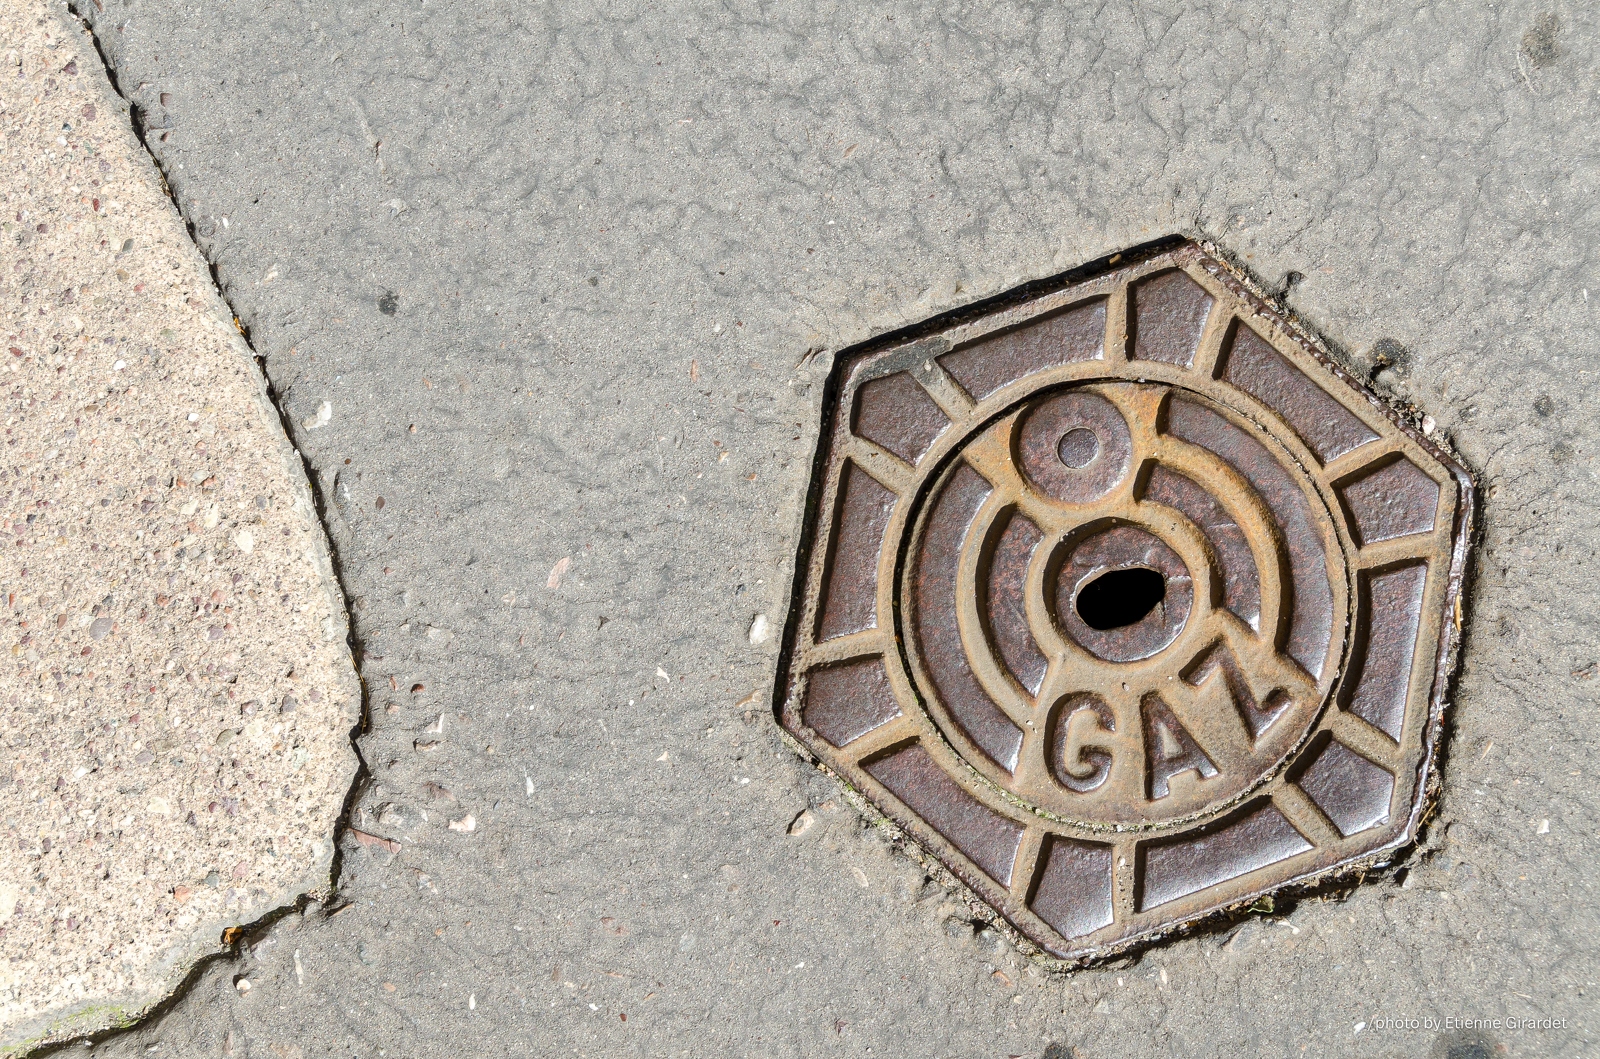 201207_17_DSC_1539-manhole-cover--by-E-Girardet.jpg